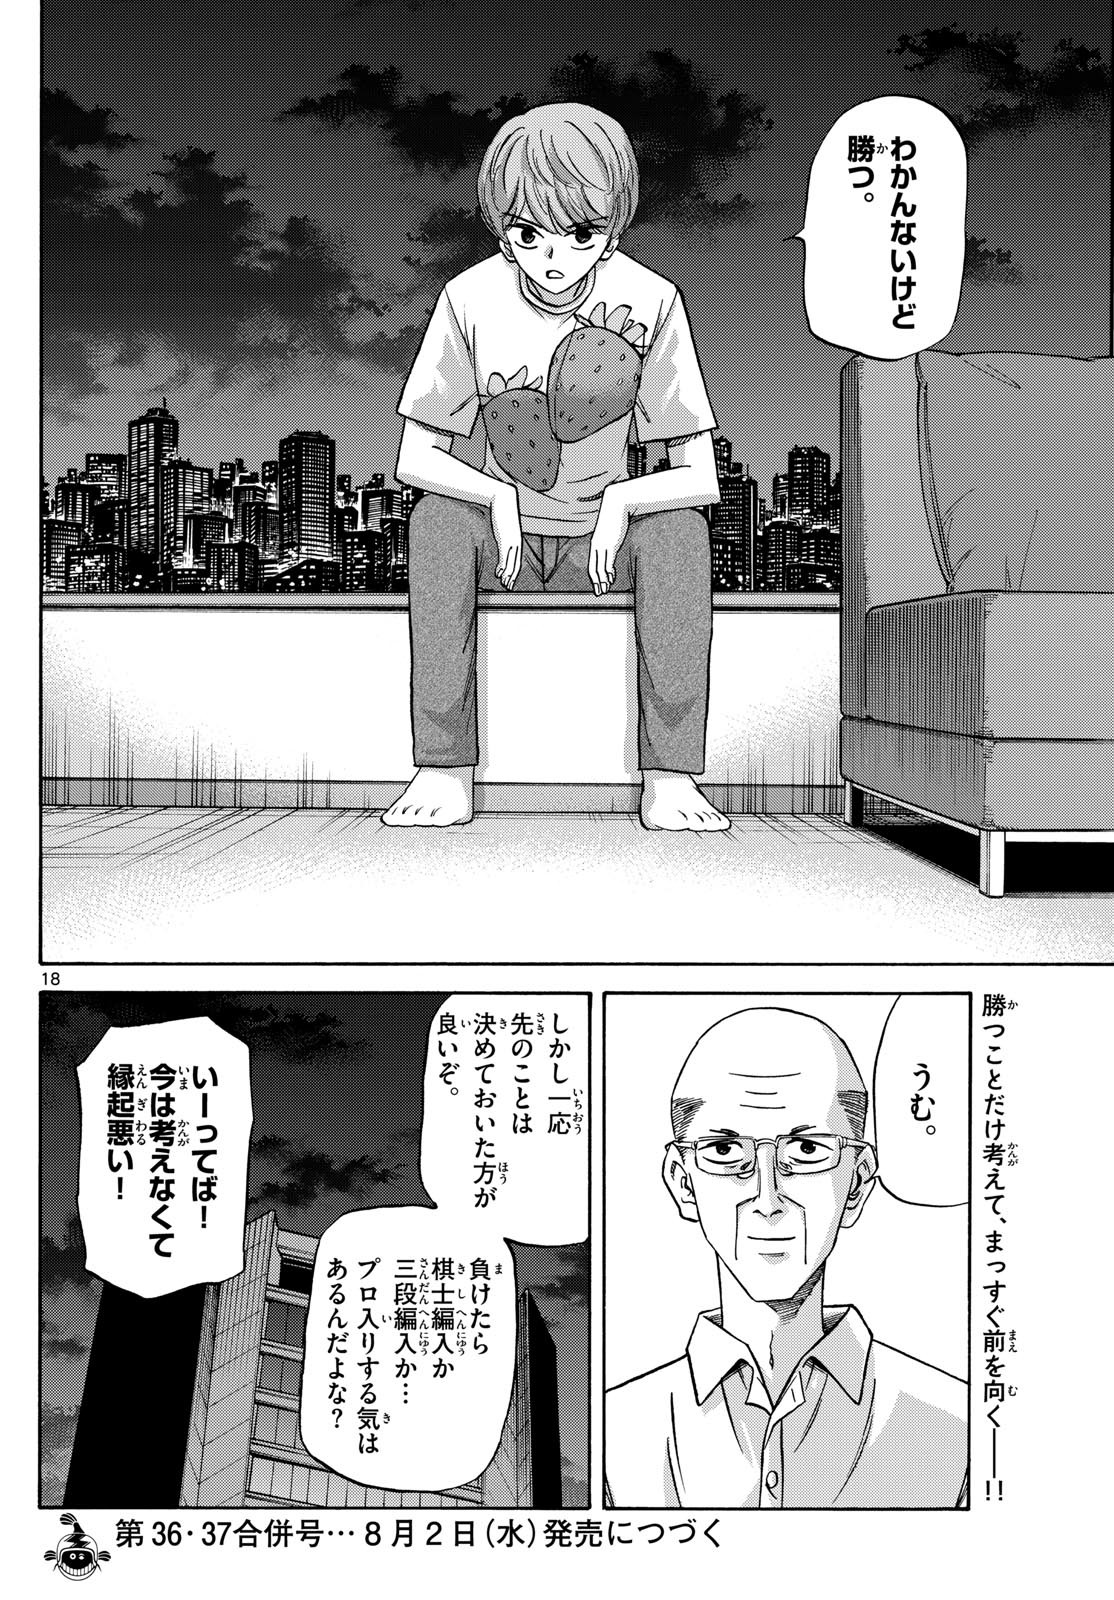 Ryu-to-Ichigo - Chapter 153 - Page 18